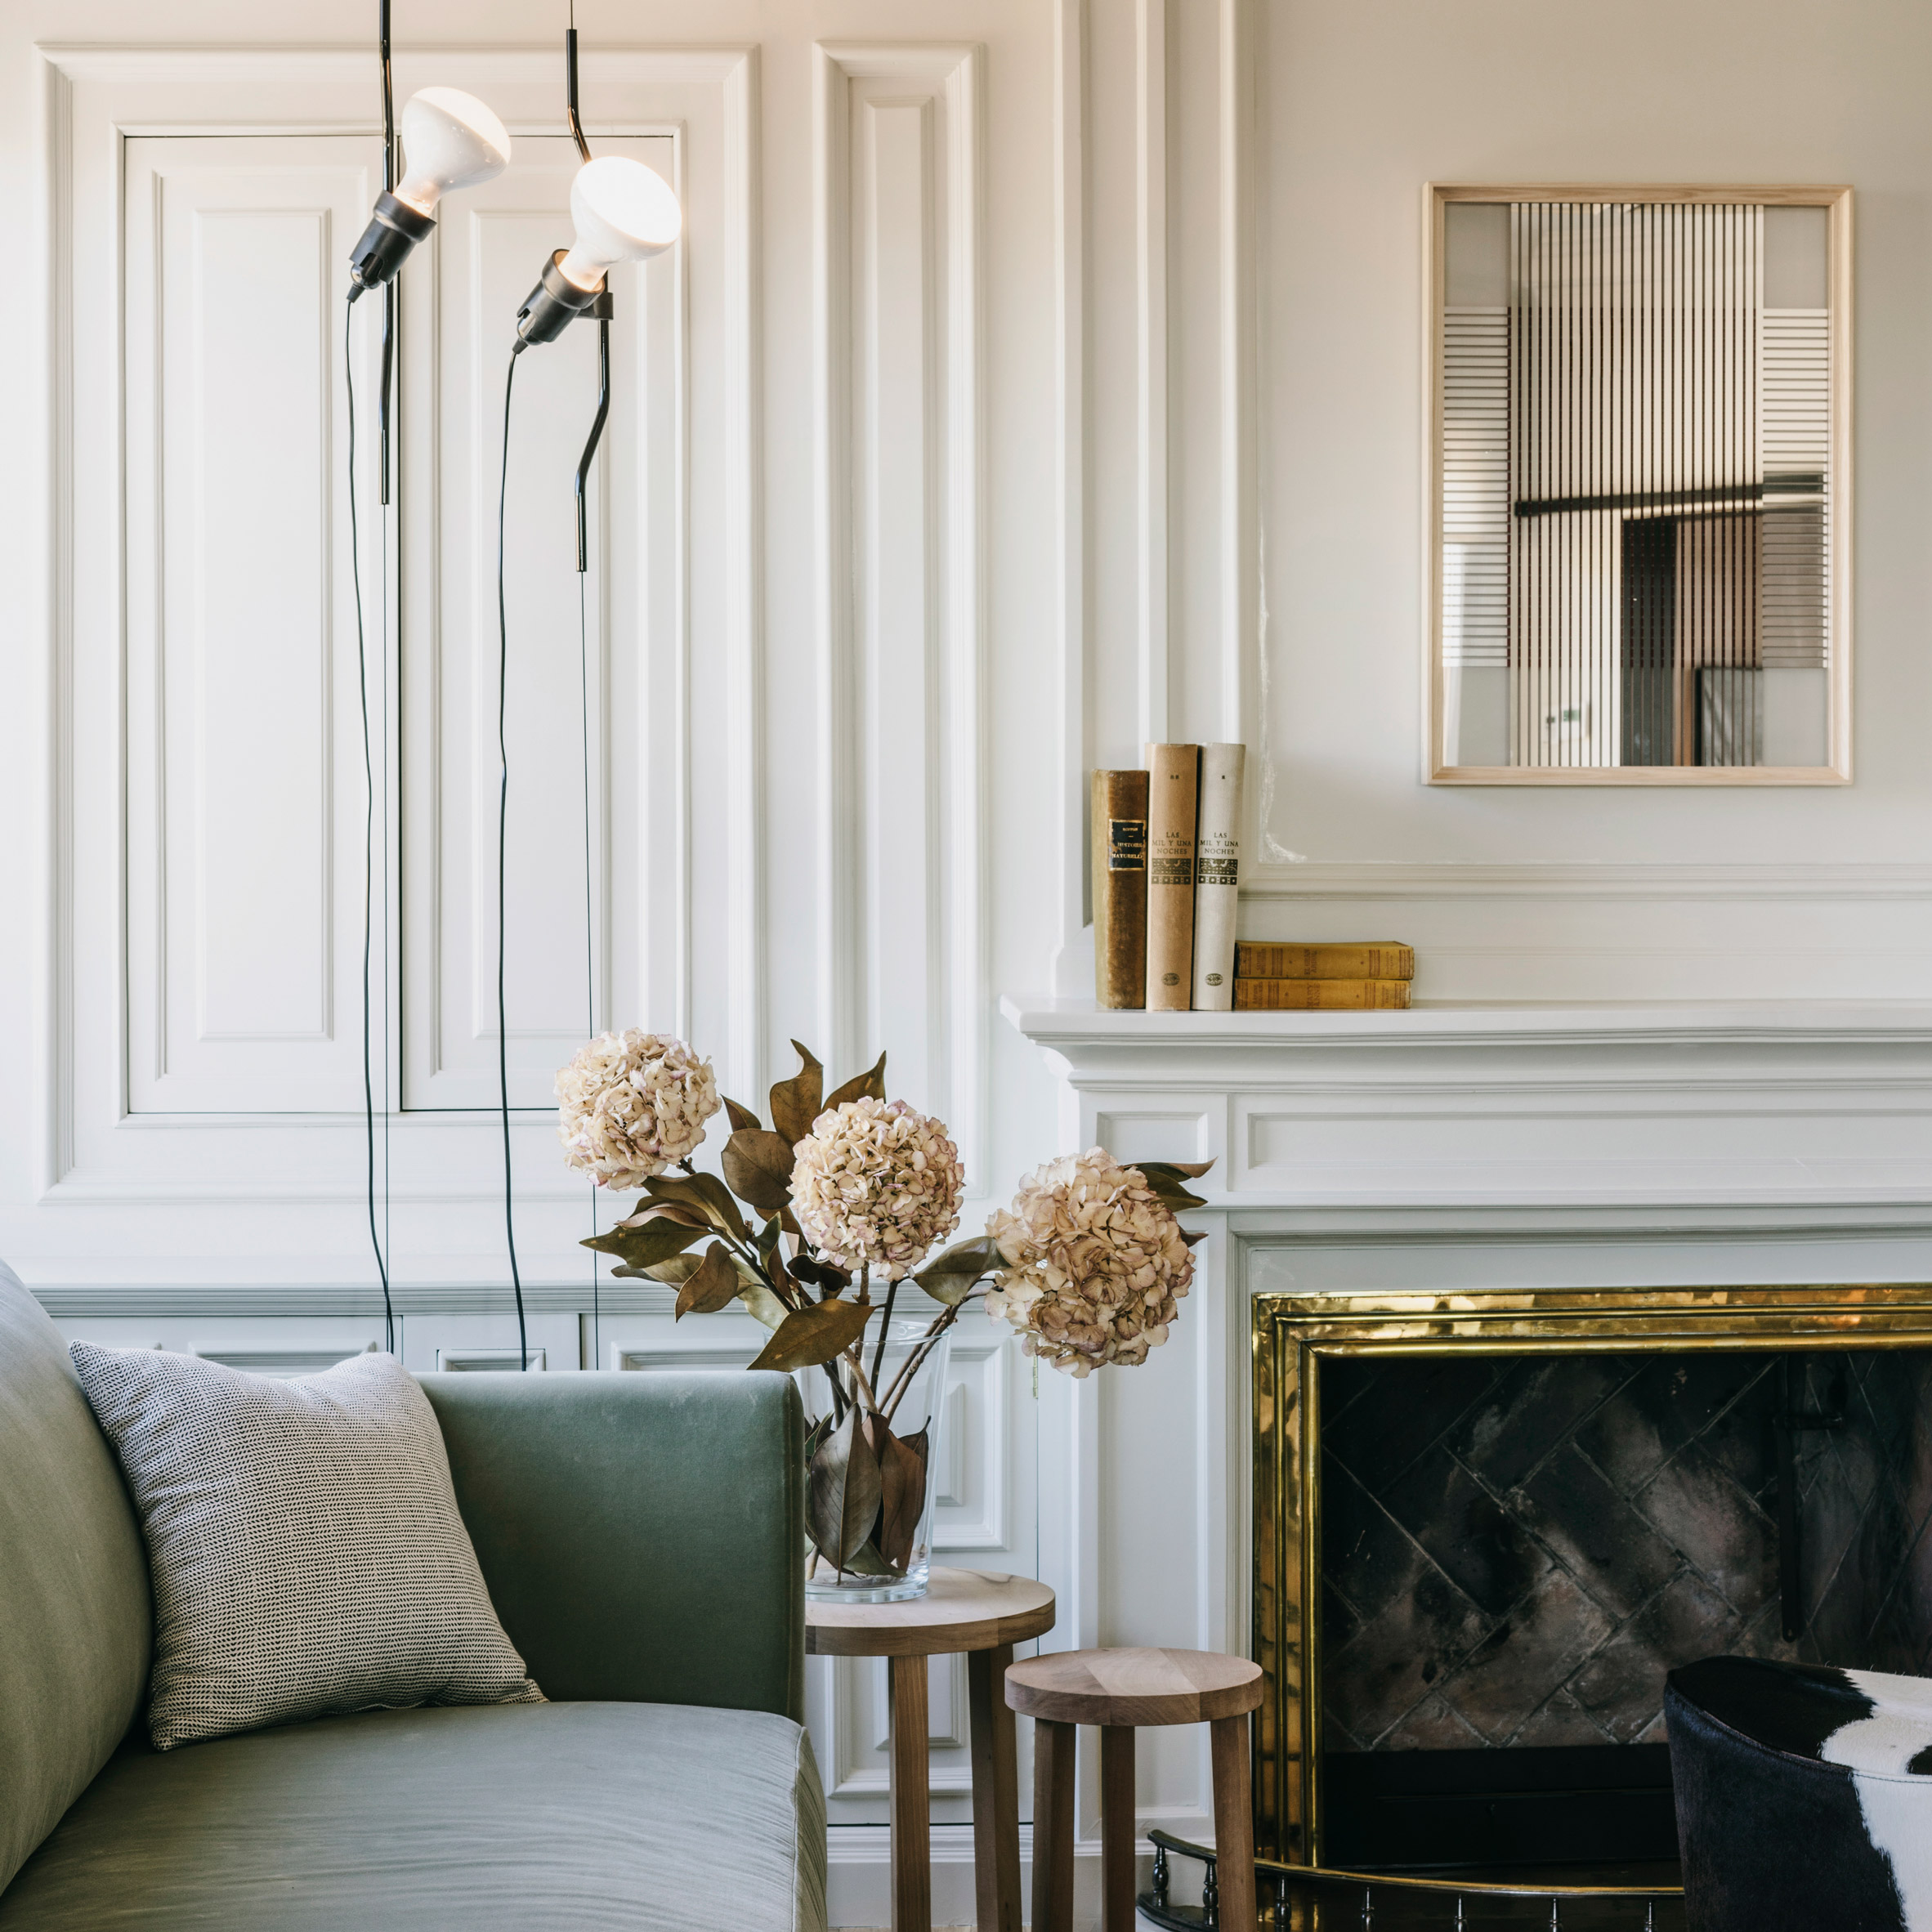 Dezeen's top 10 home interiors of 2018: Sant Gervasi apartment